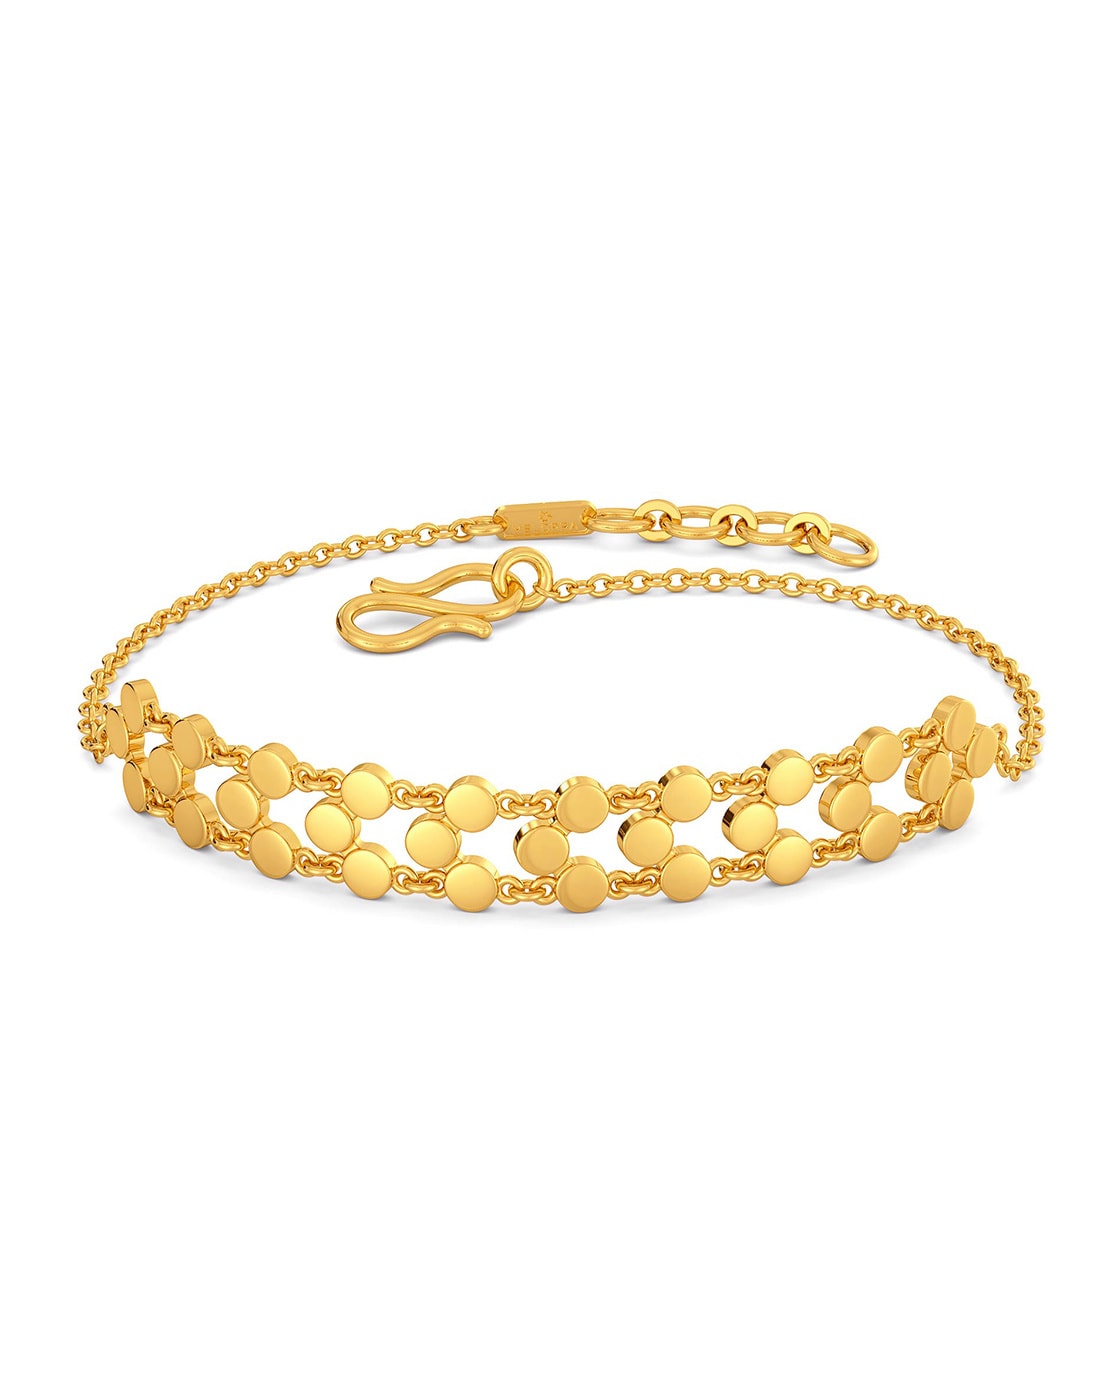 Gold Bracelet Design For Women Online | Buy Two Tone Bracelet | AJS